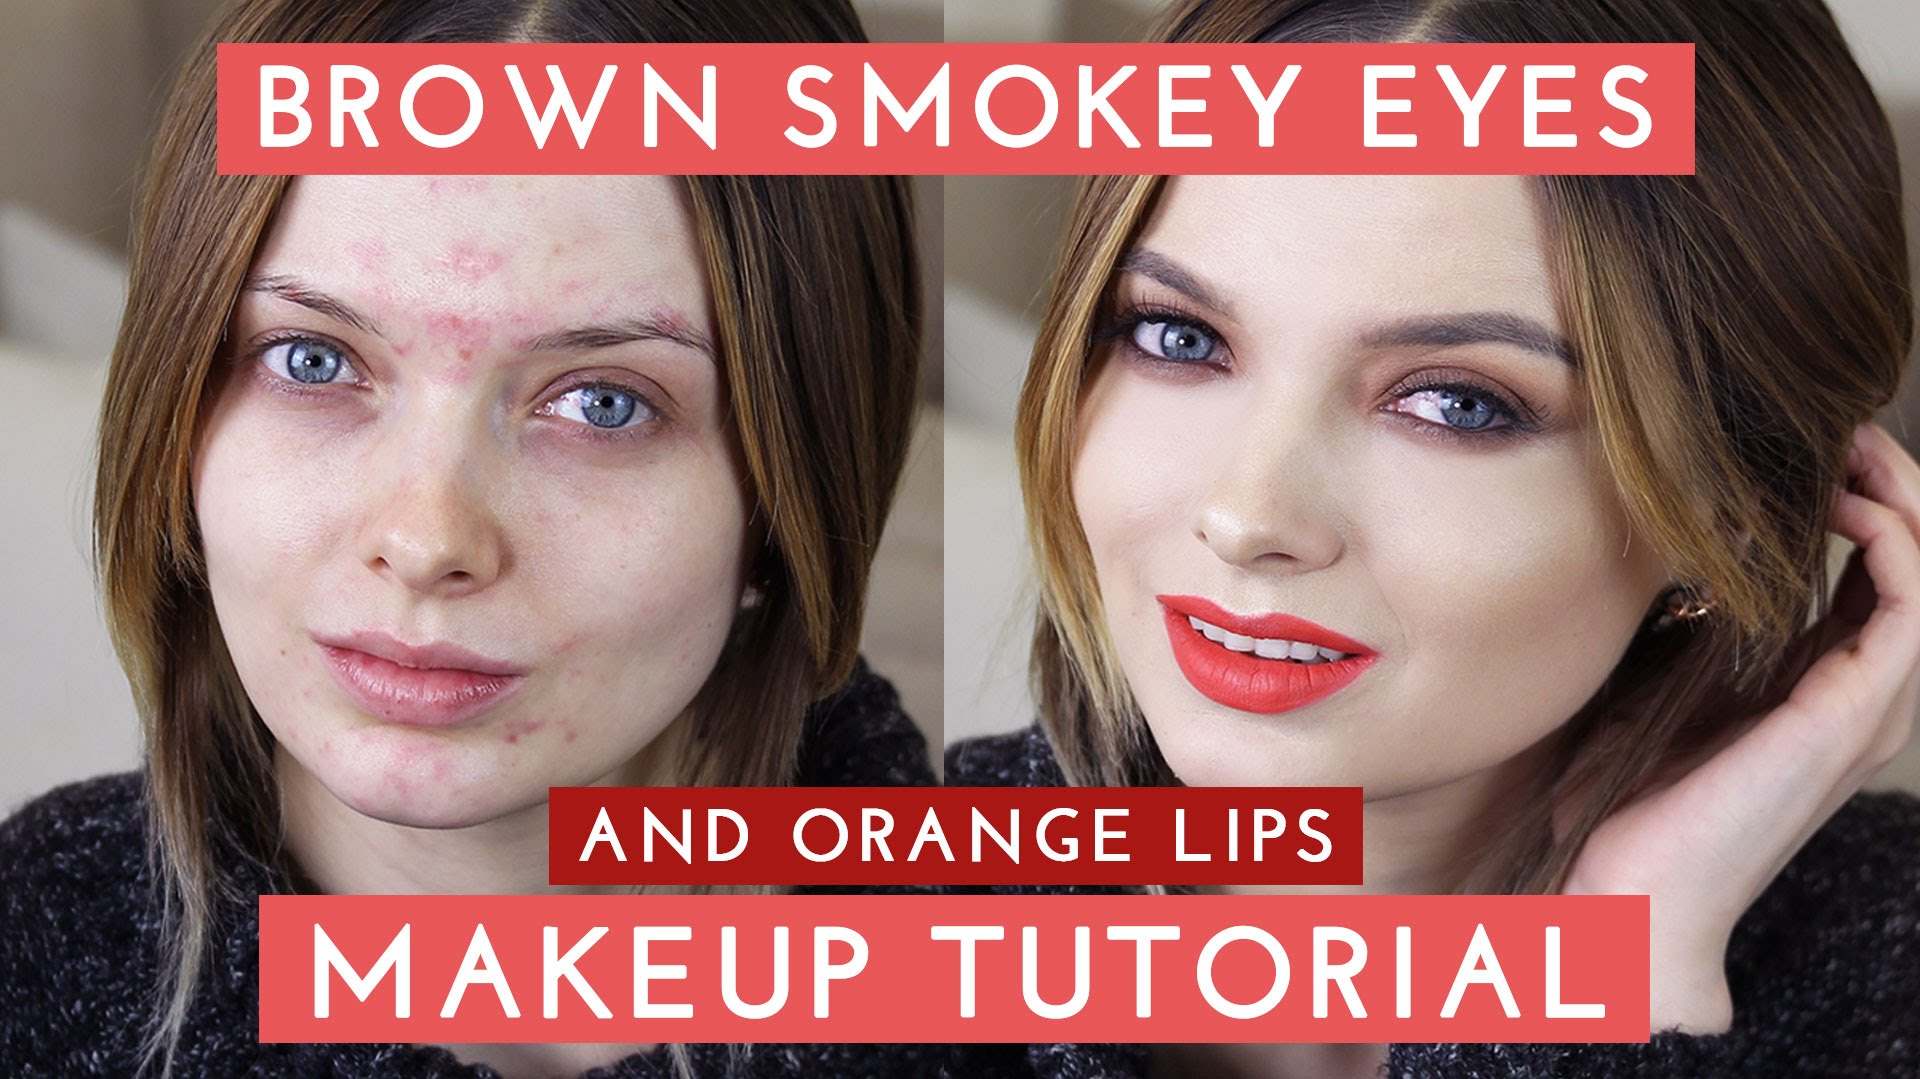 Eye Makeup For Orange Lips Brown Smokey Eyes Orange Lips Makeup Tutorial Mypaleskin